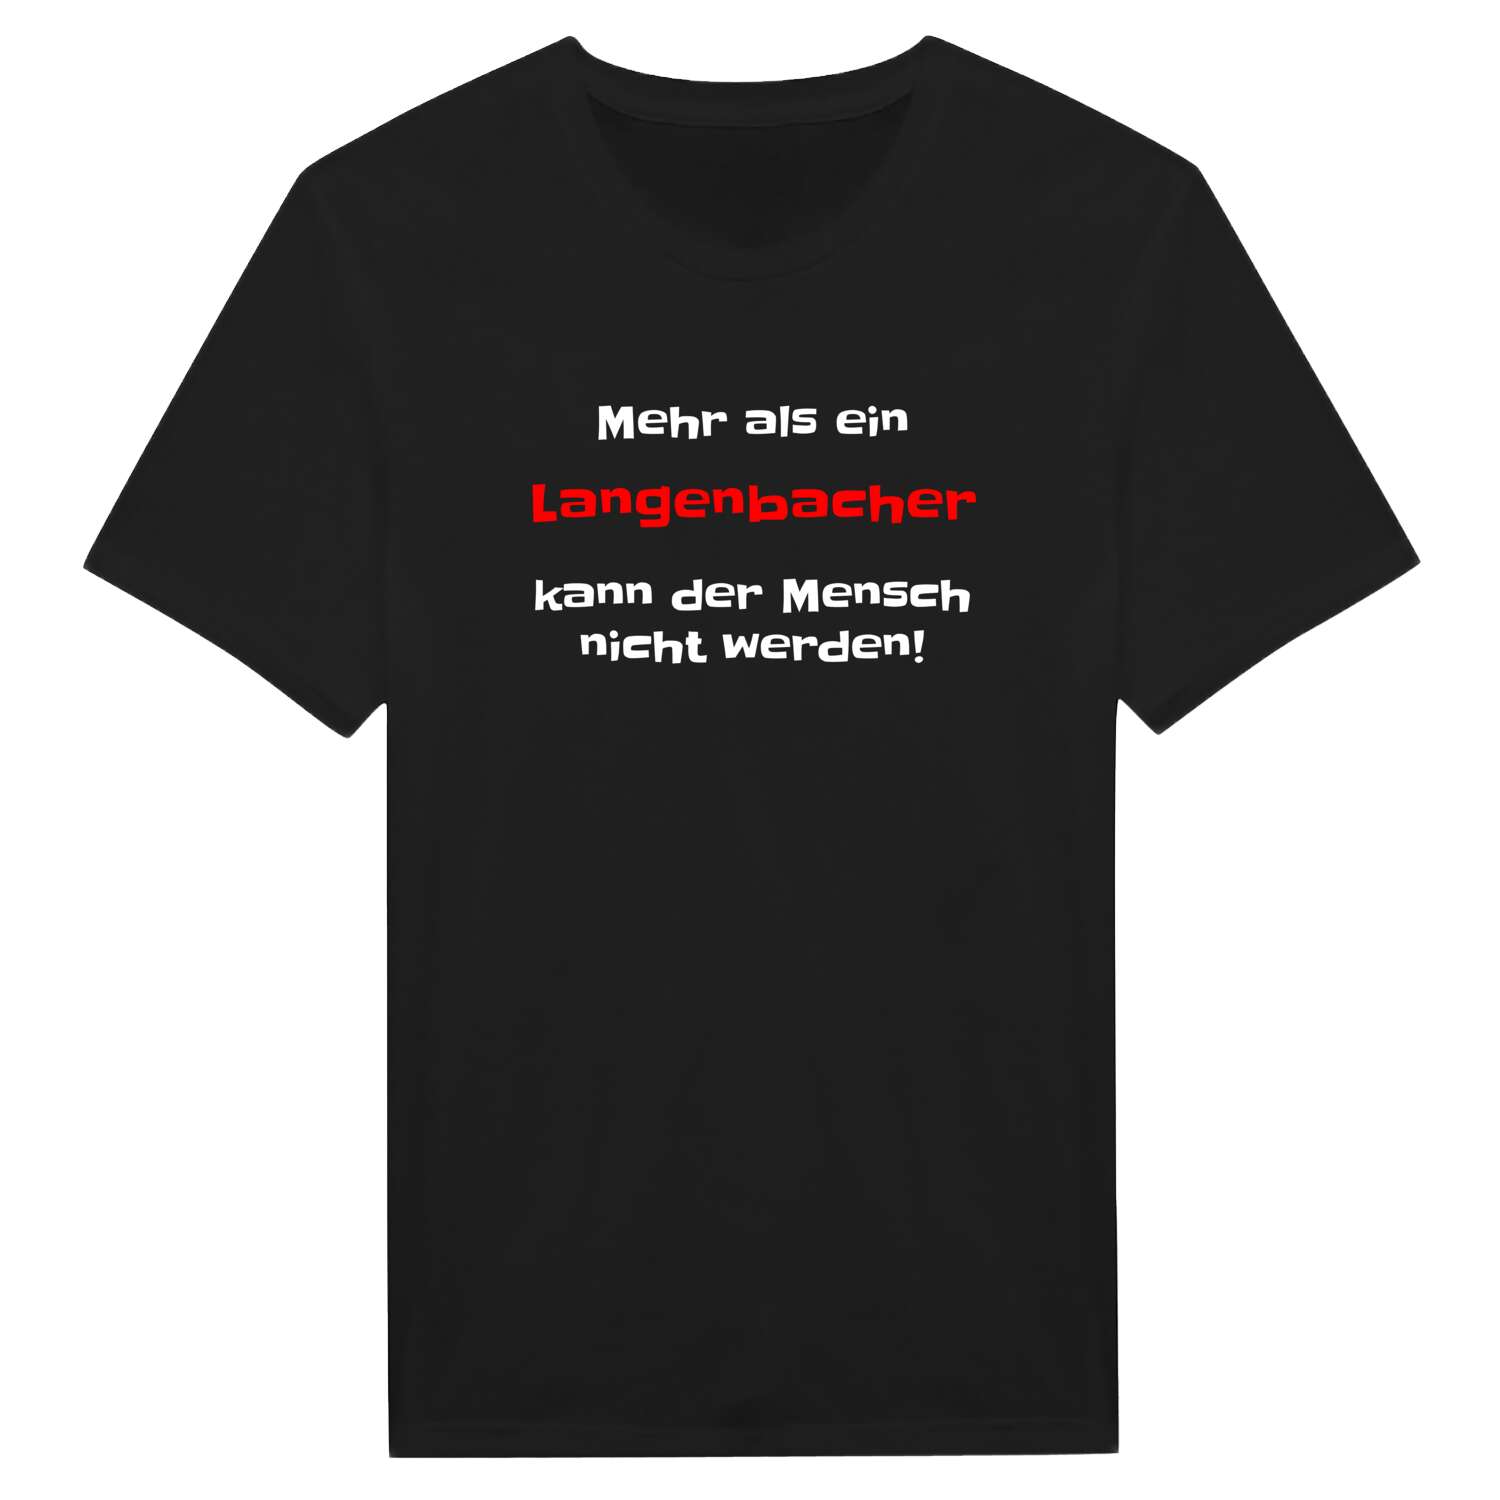 Langenbach T-Shirt »Mehr als ein«